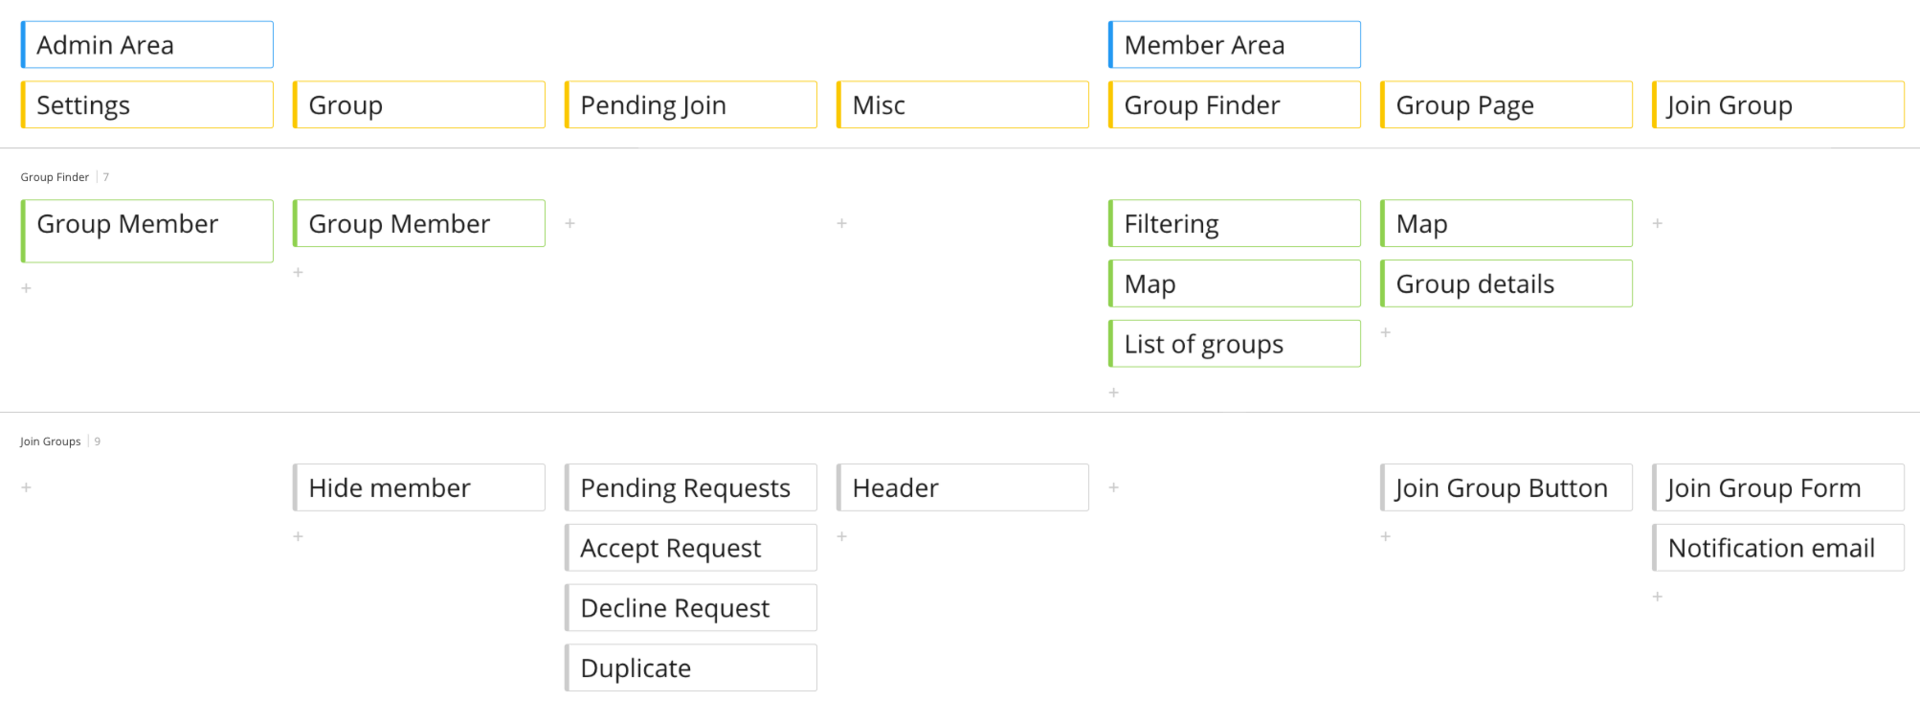 developer-scope-map-group-finder.png